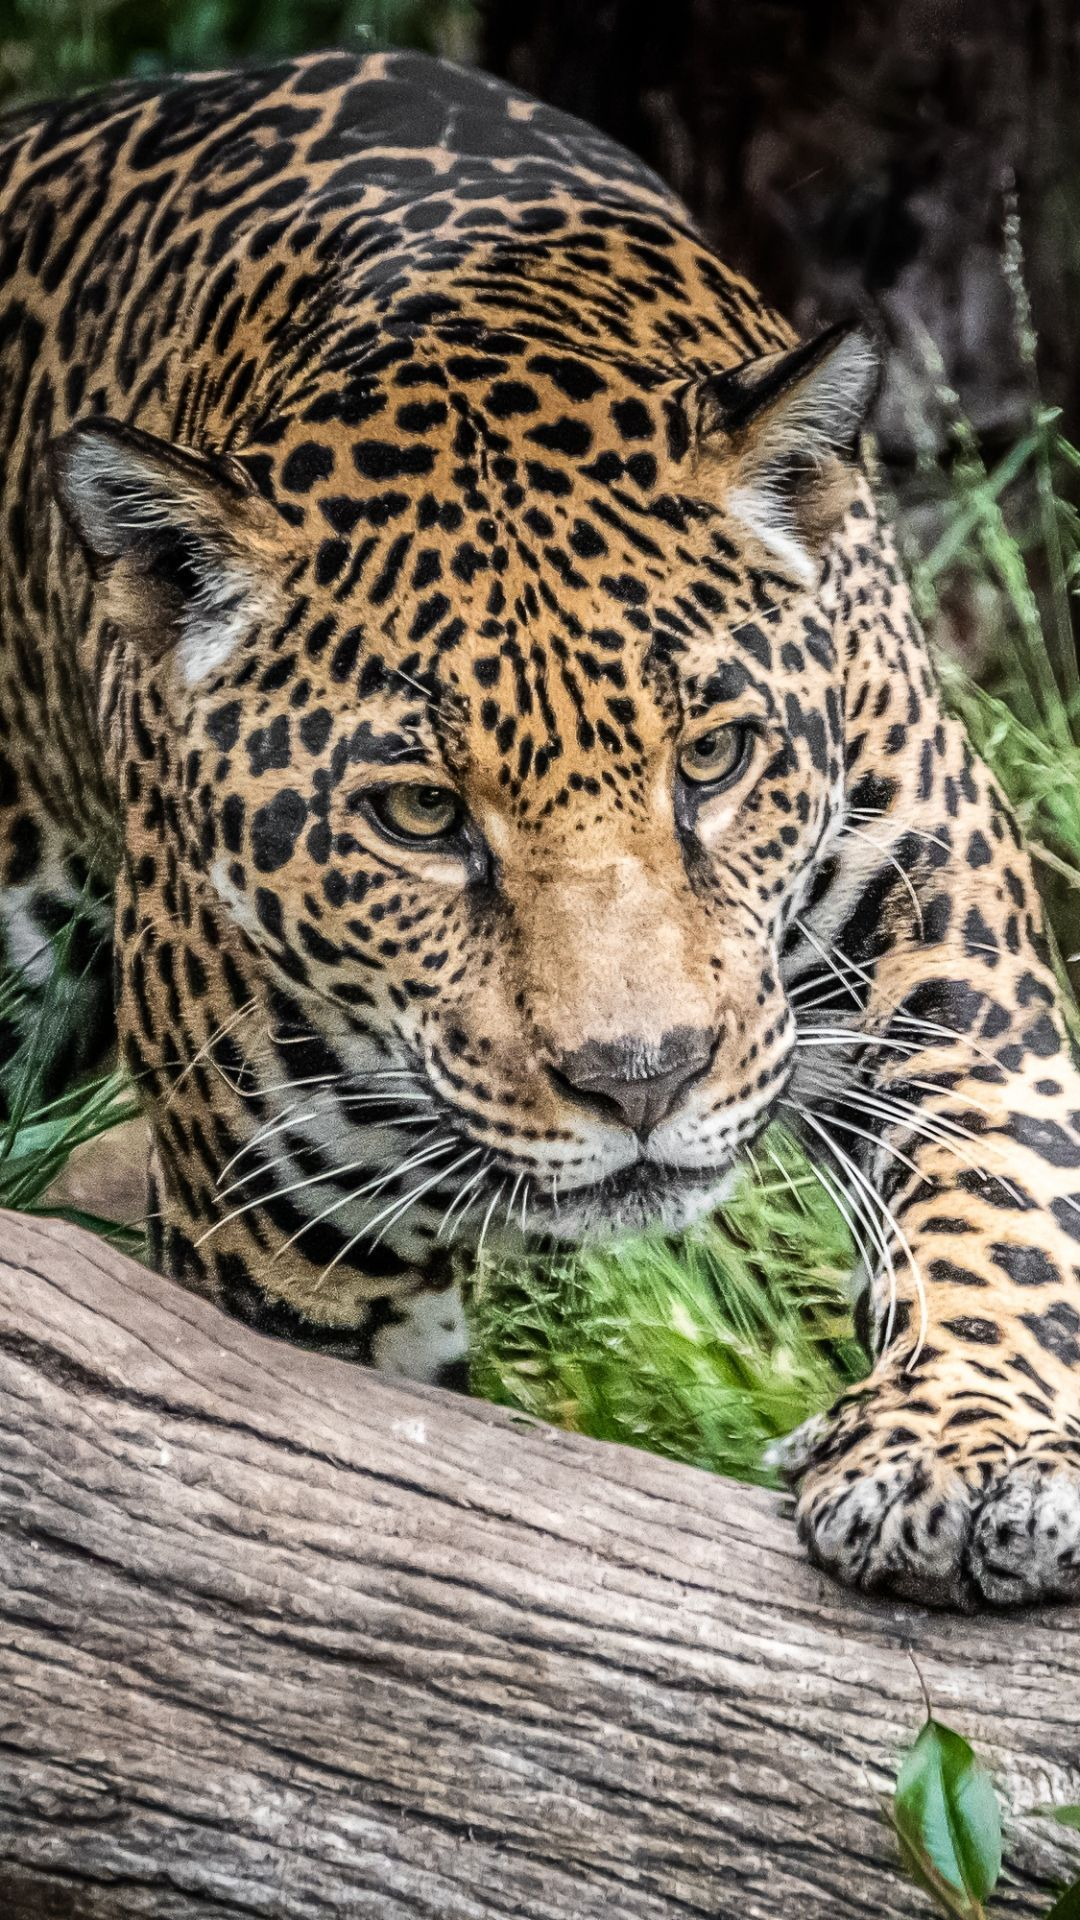 1080x1920 Animal Jaguar Cats big cat jaguar predator (Animal) wildlife () Mobile Wallpaper | Animal photography wildlife, Jaguar animal, Wild cats